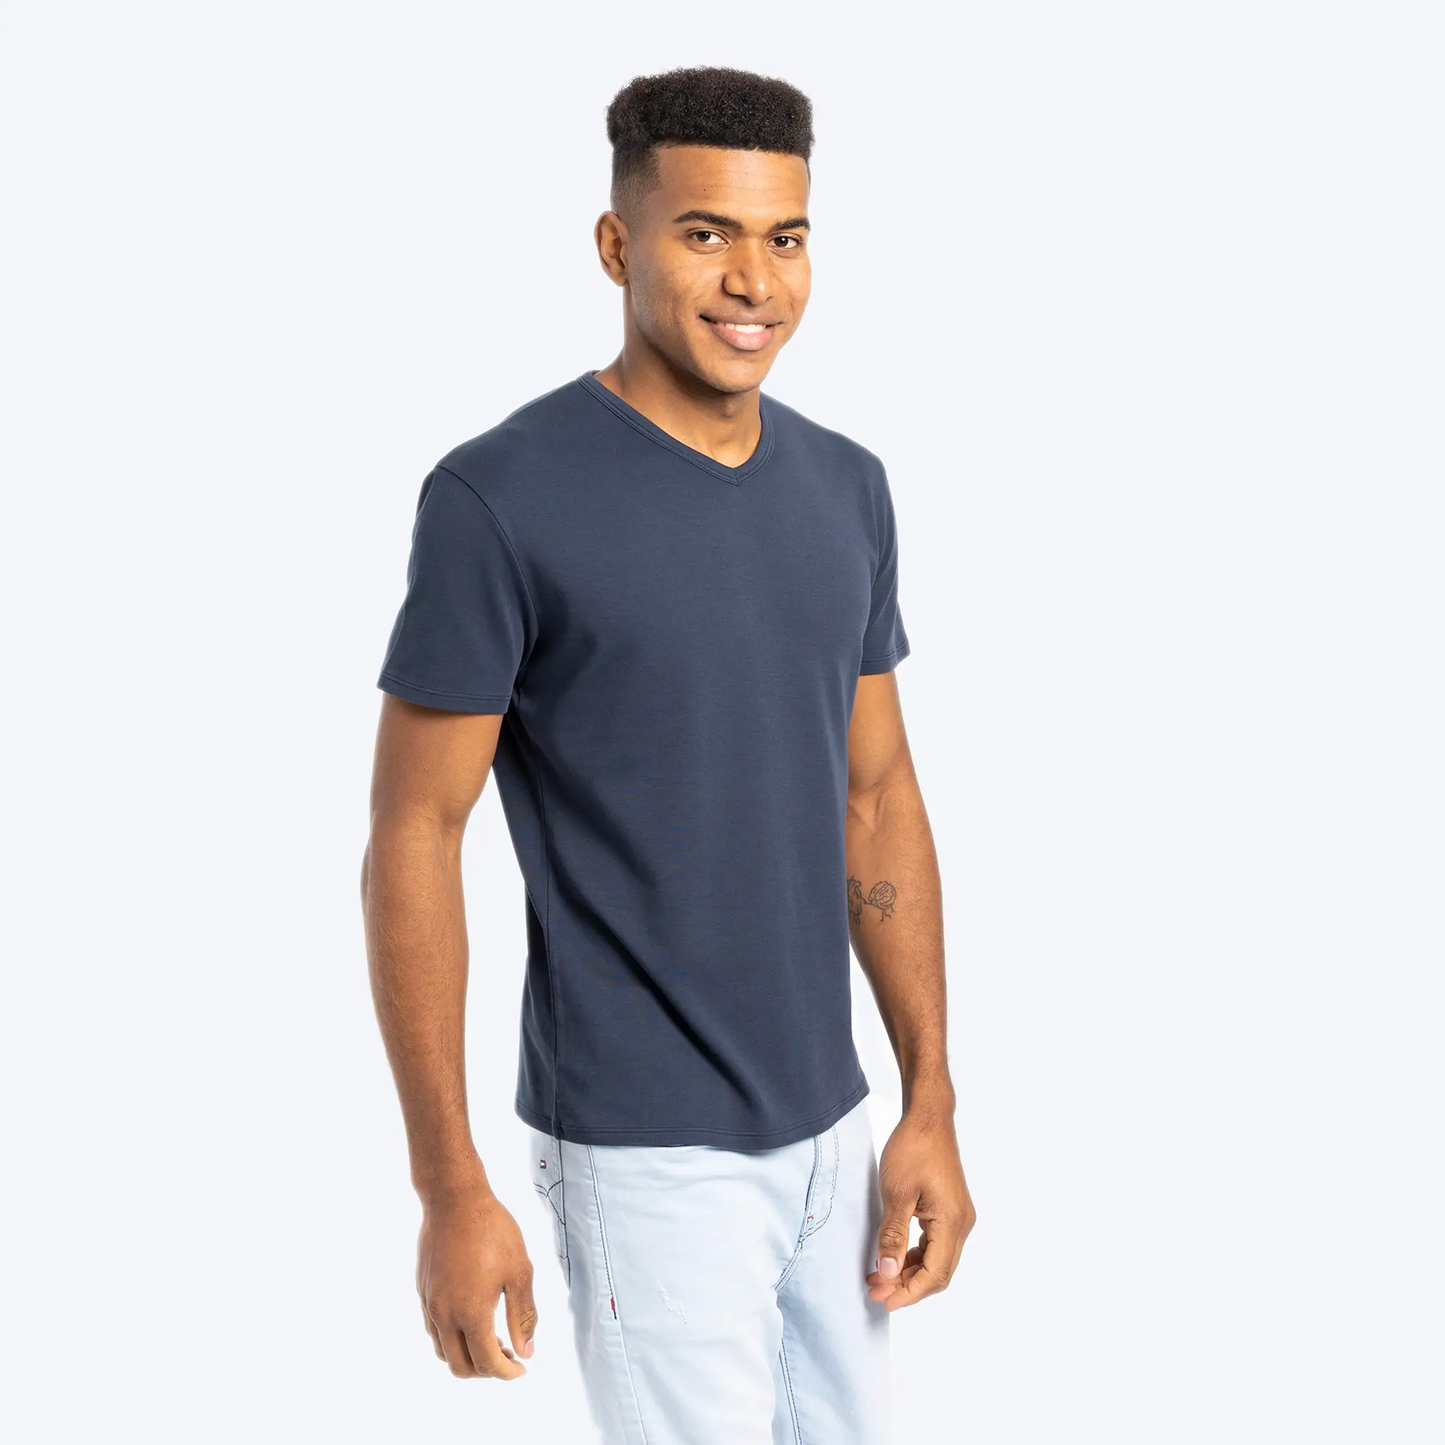 mens ultra soft tshirt vneck color navy blue